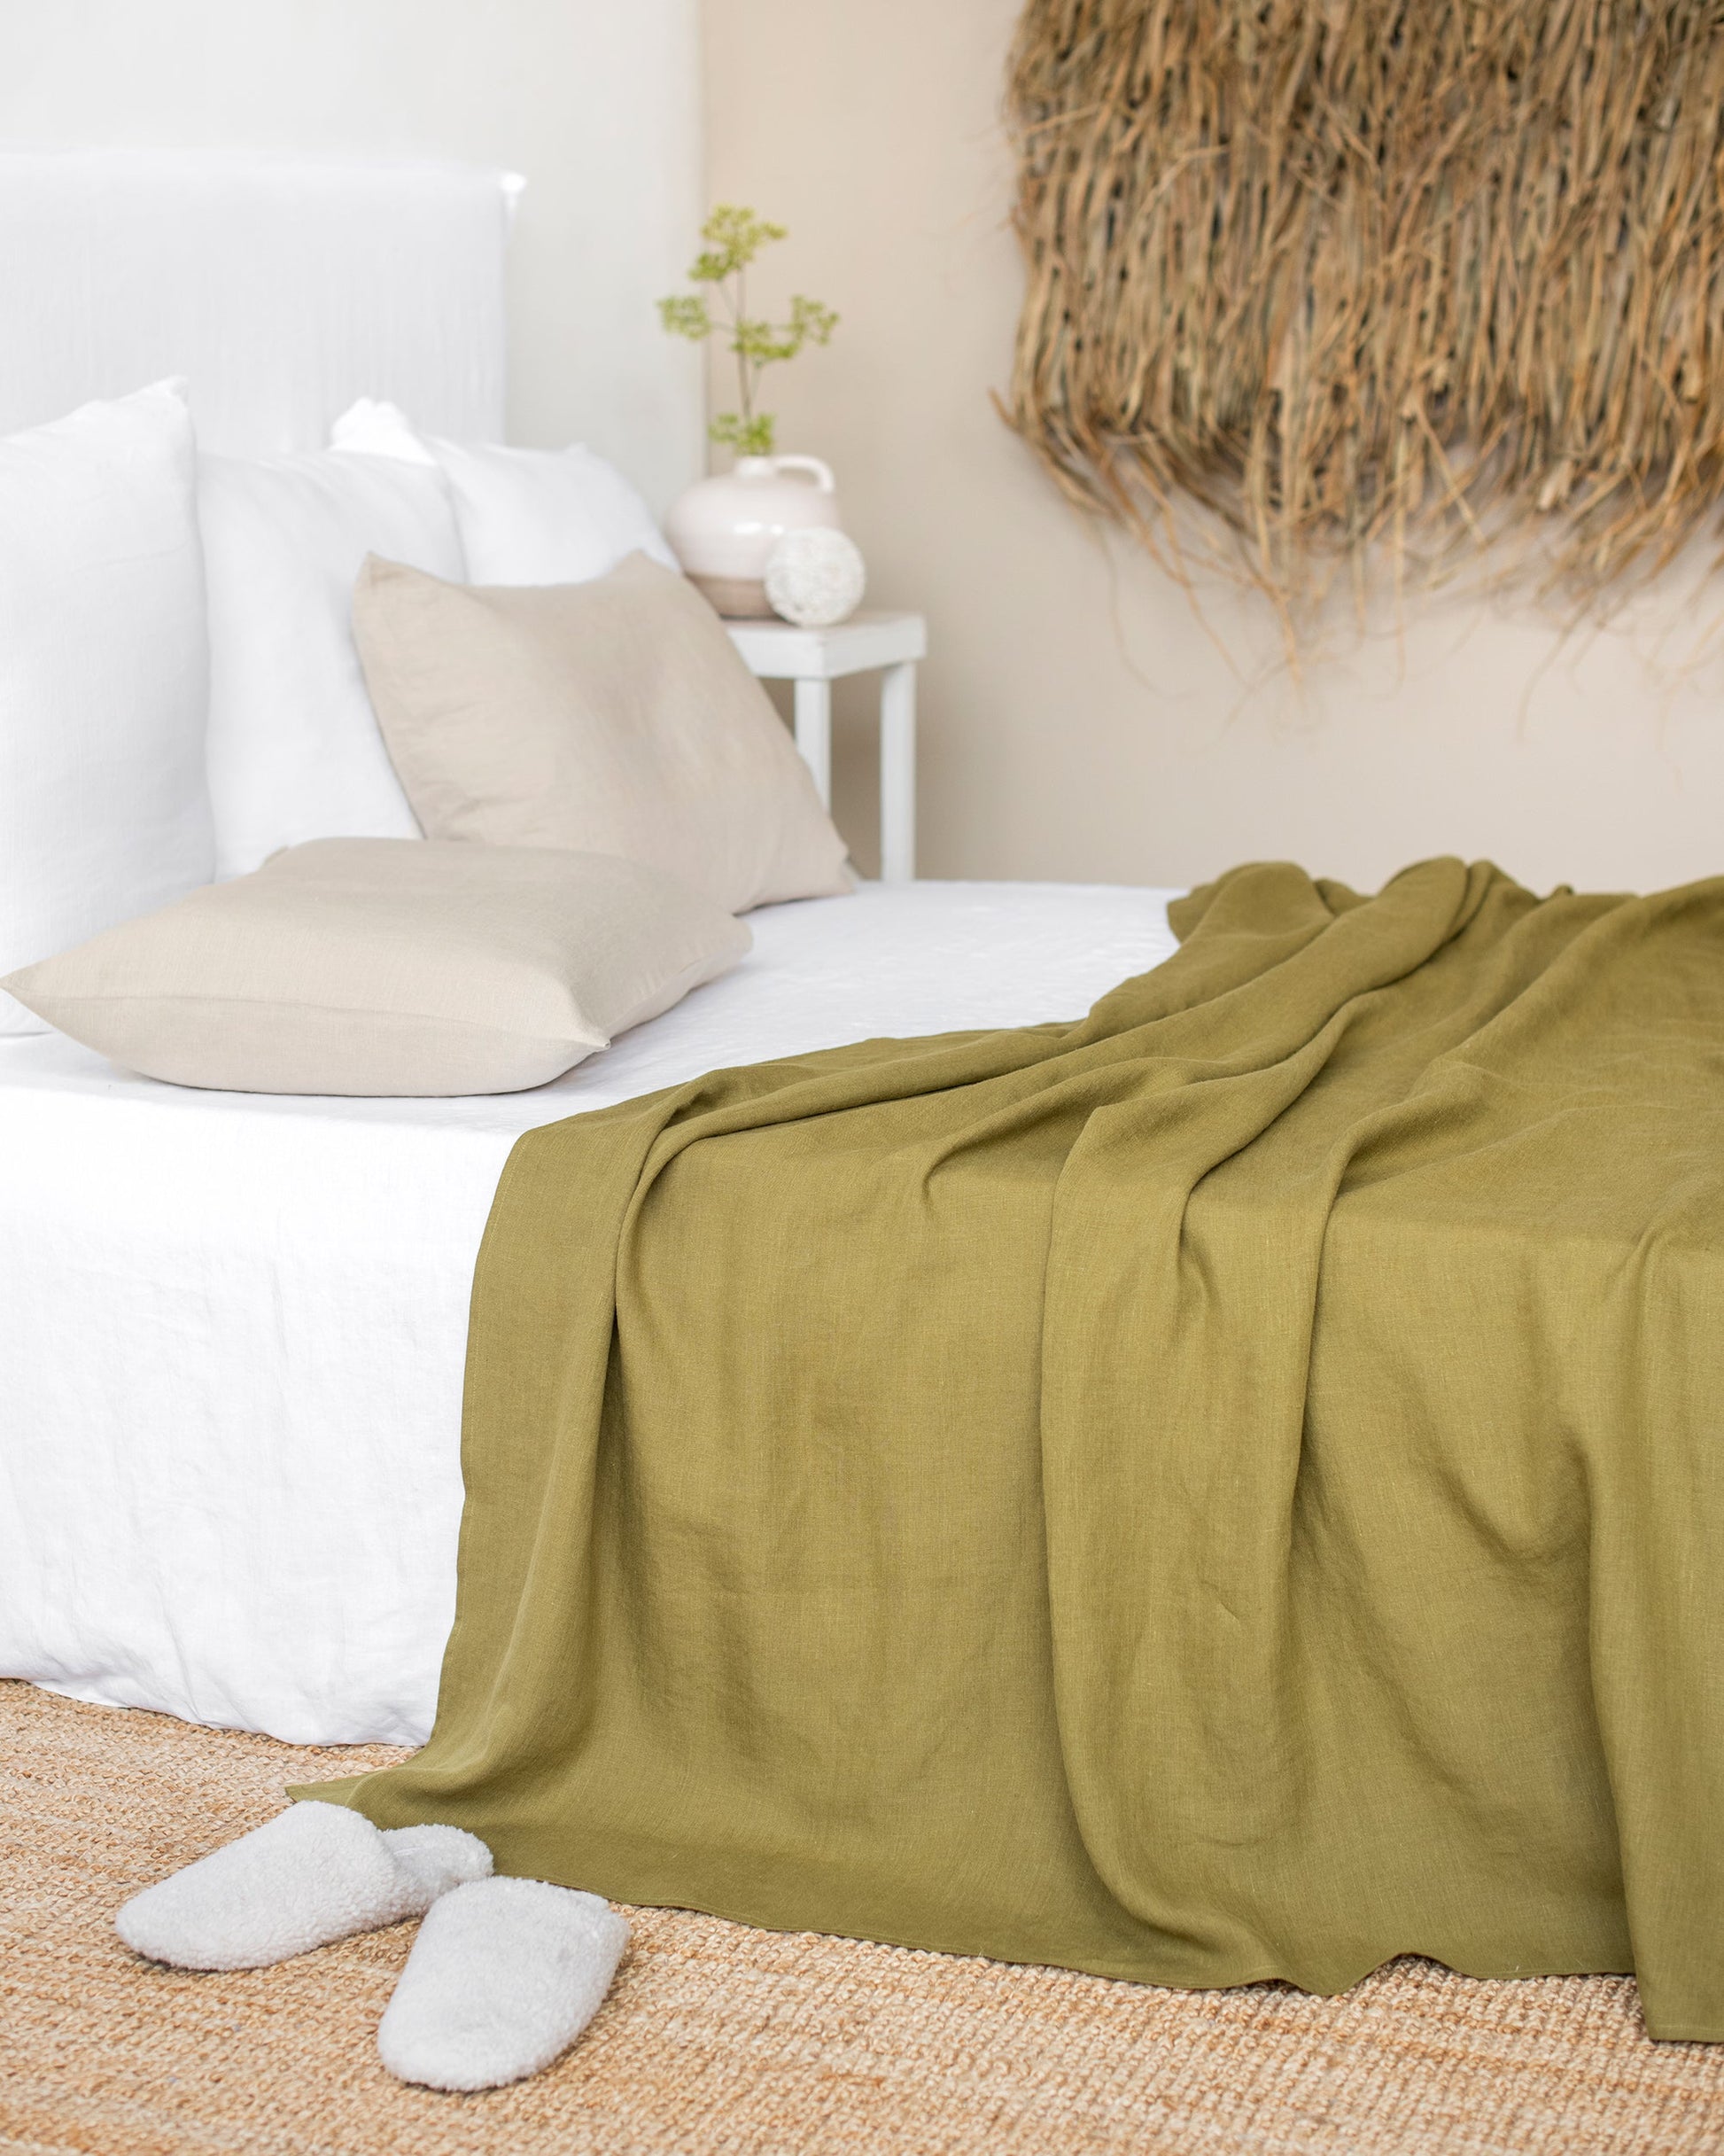 Moss Green Linen Bed Sheets Set, Green Bedding, Medium Weight Linen, Top  Sheet, Fitted Sheet, Pillow Cases Twin, Queen, King or Custom Size 